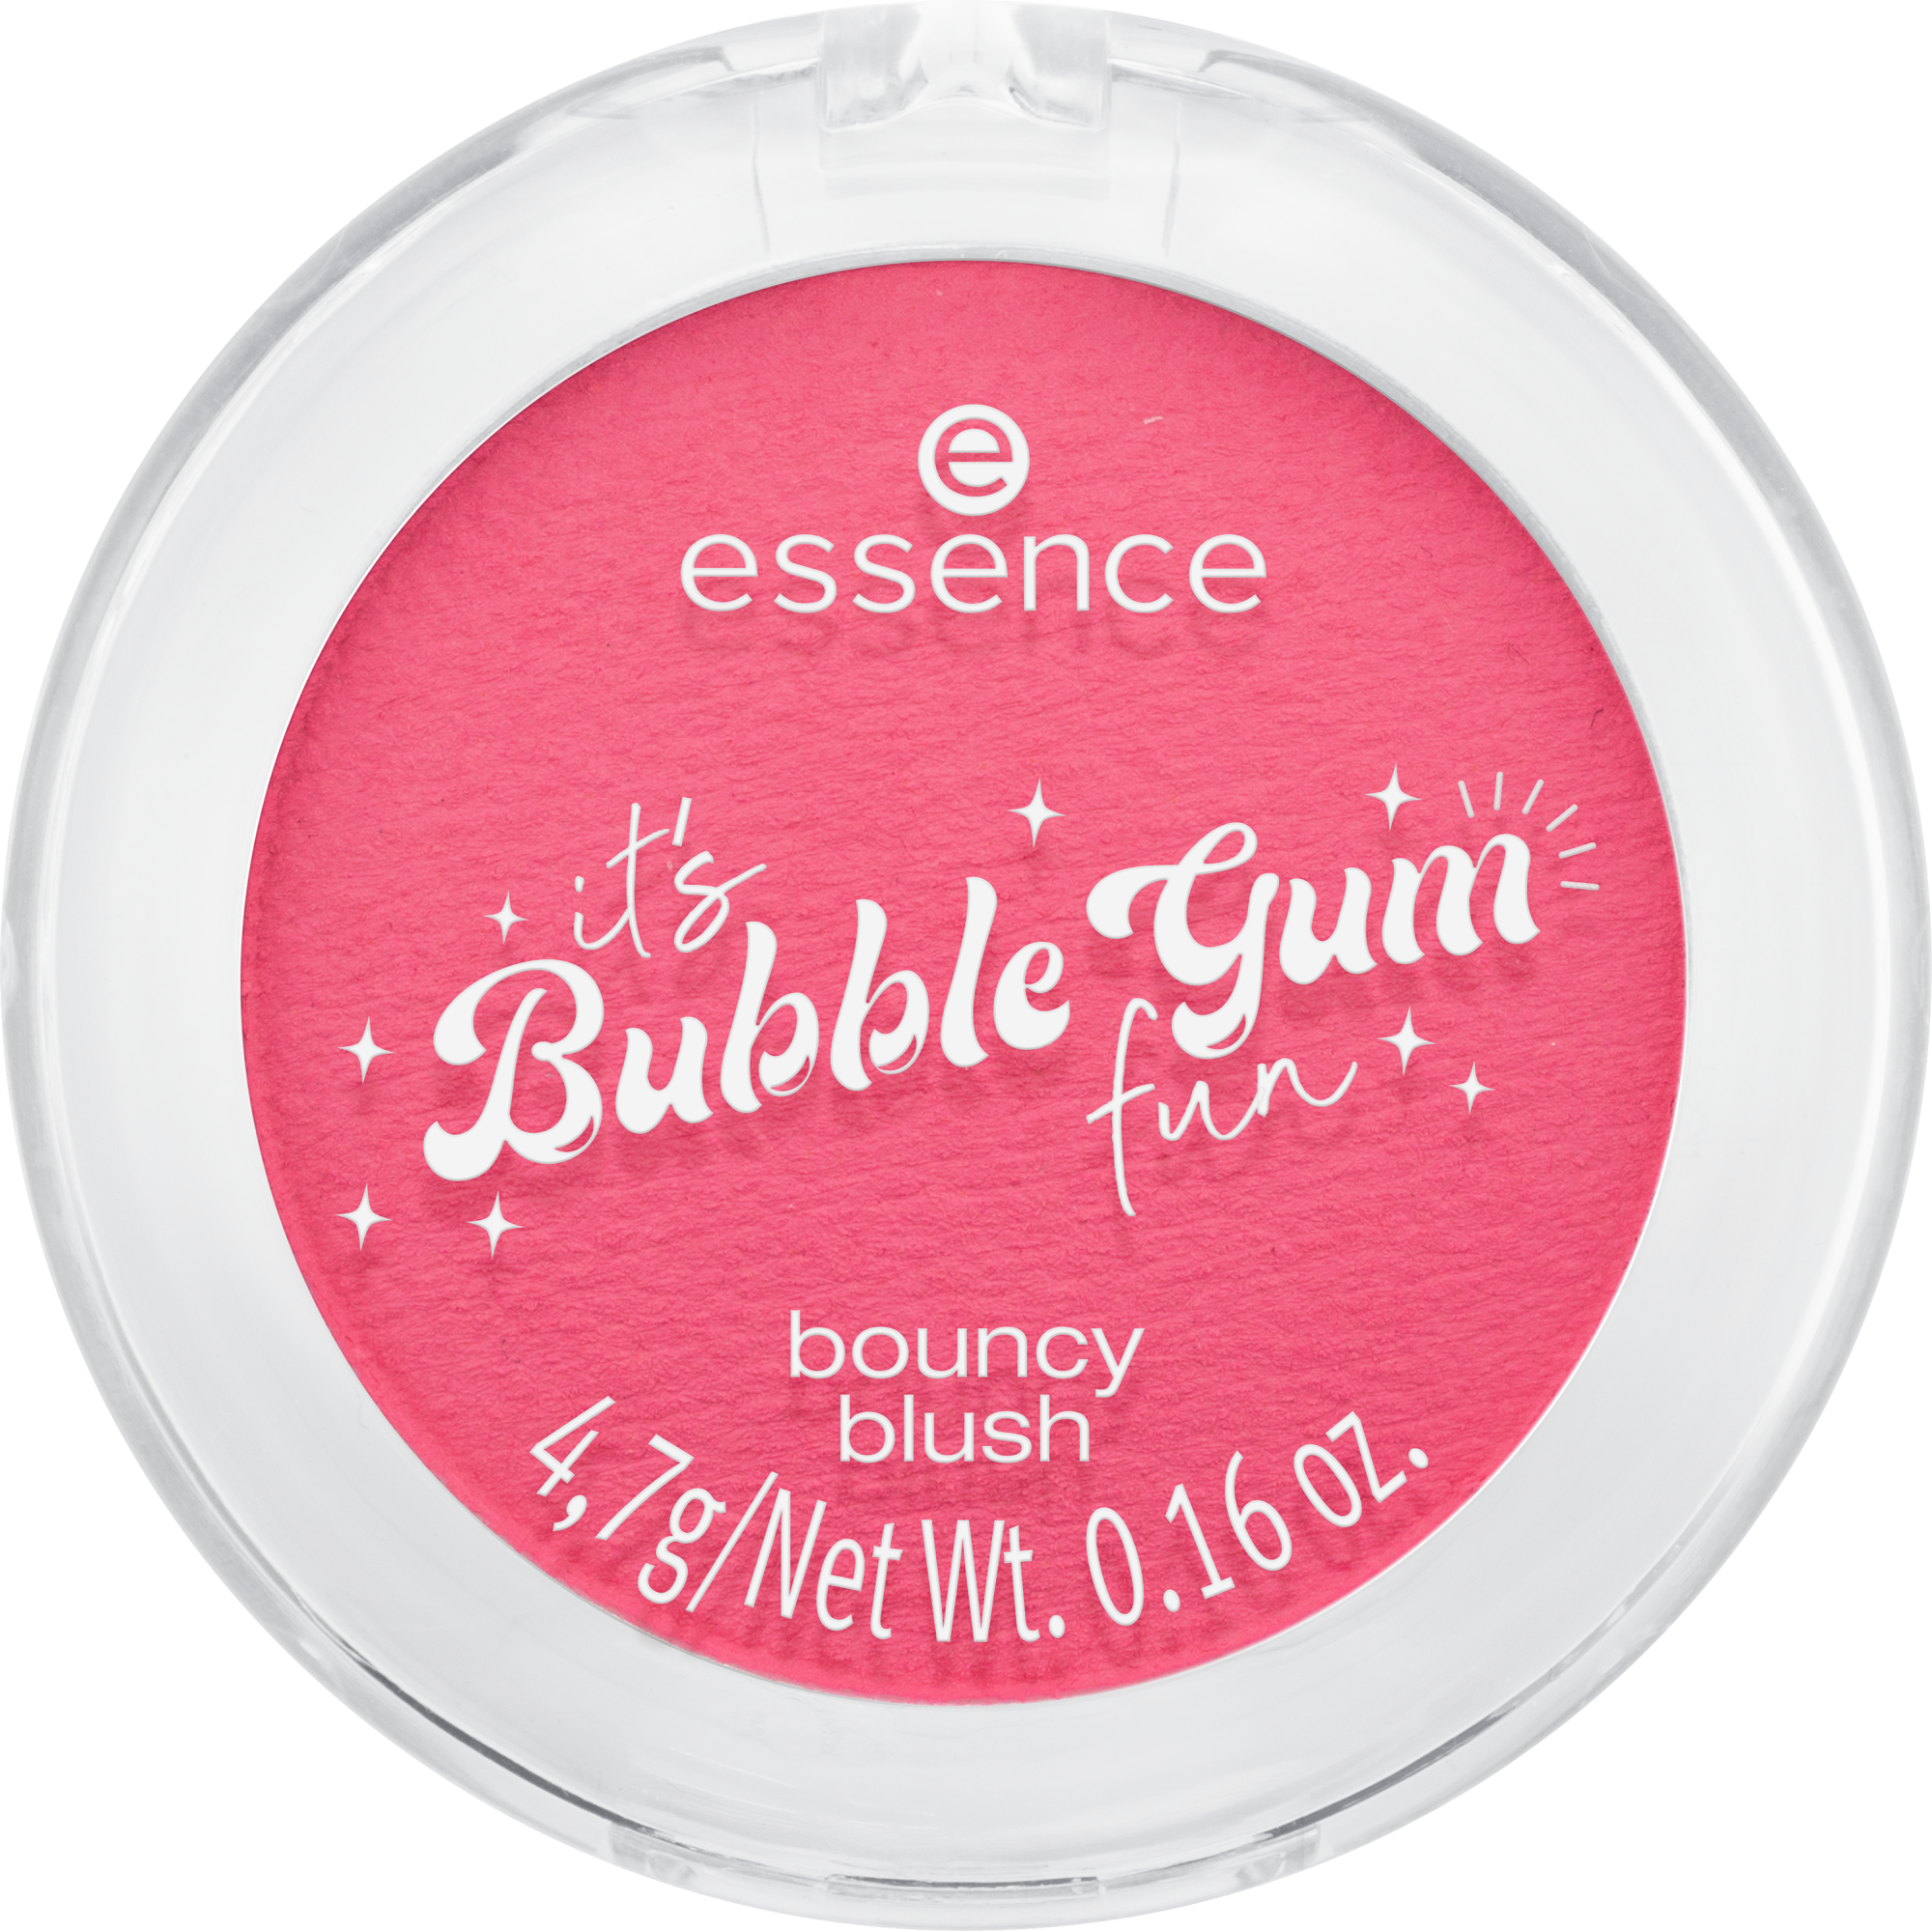 ez a Bubble Gum fun bouncy blush